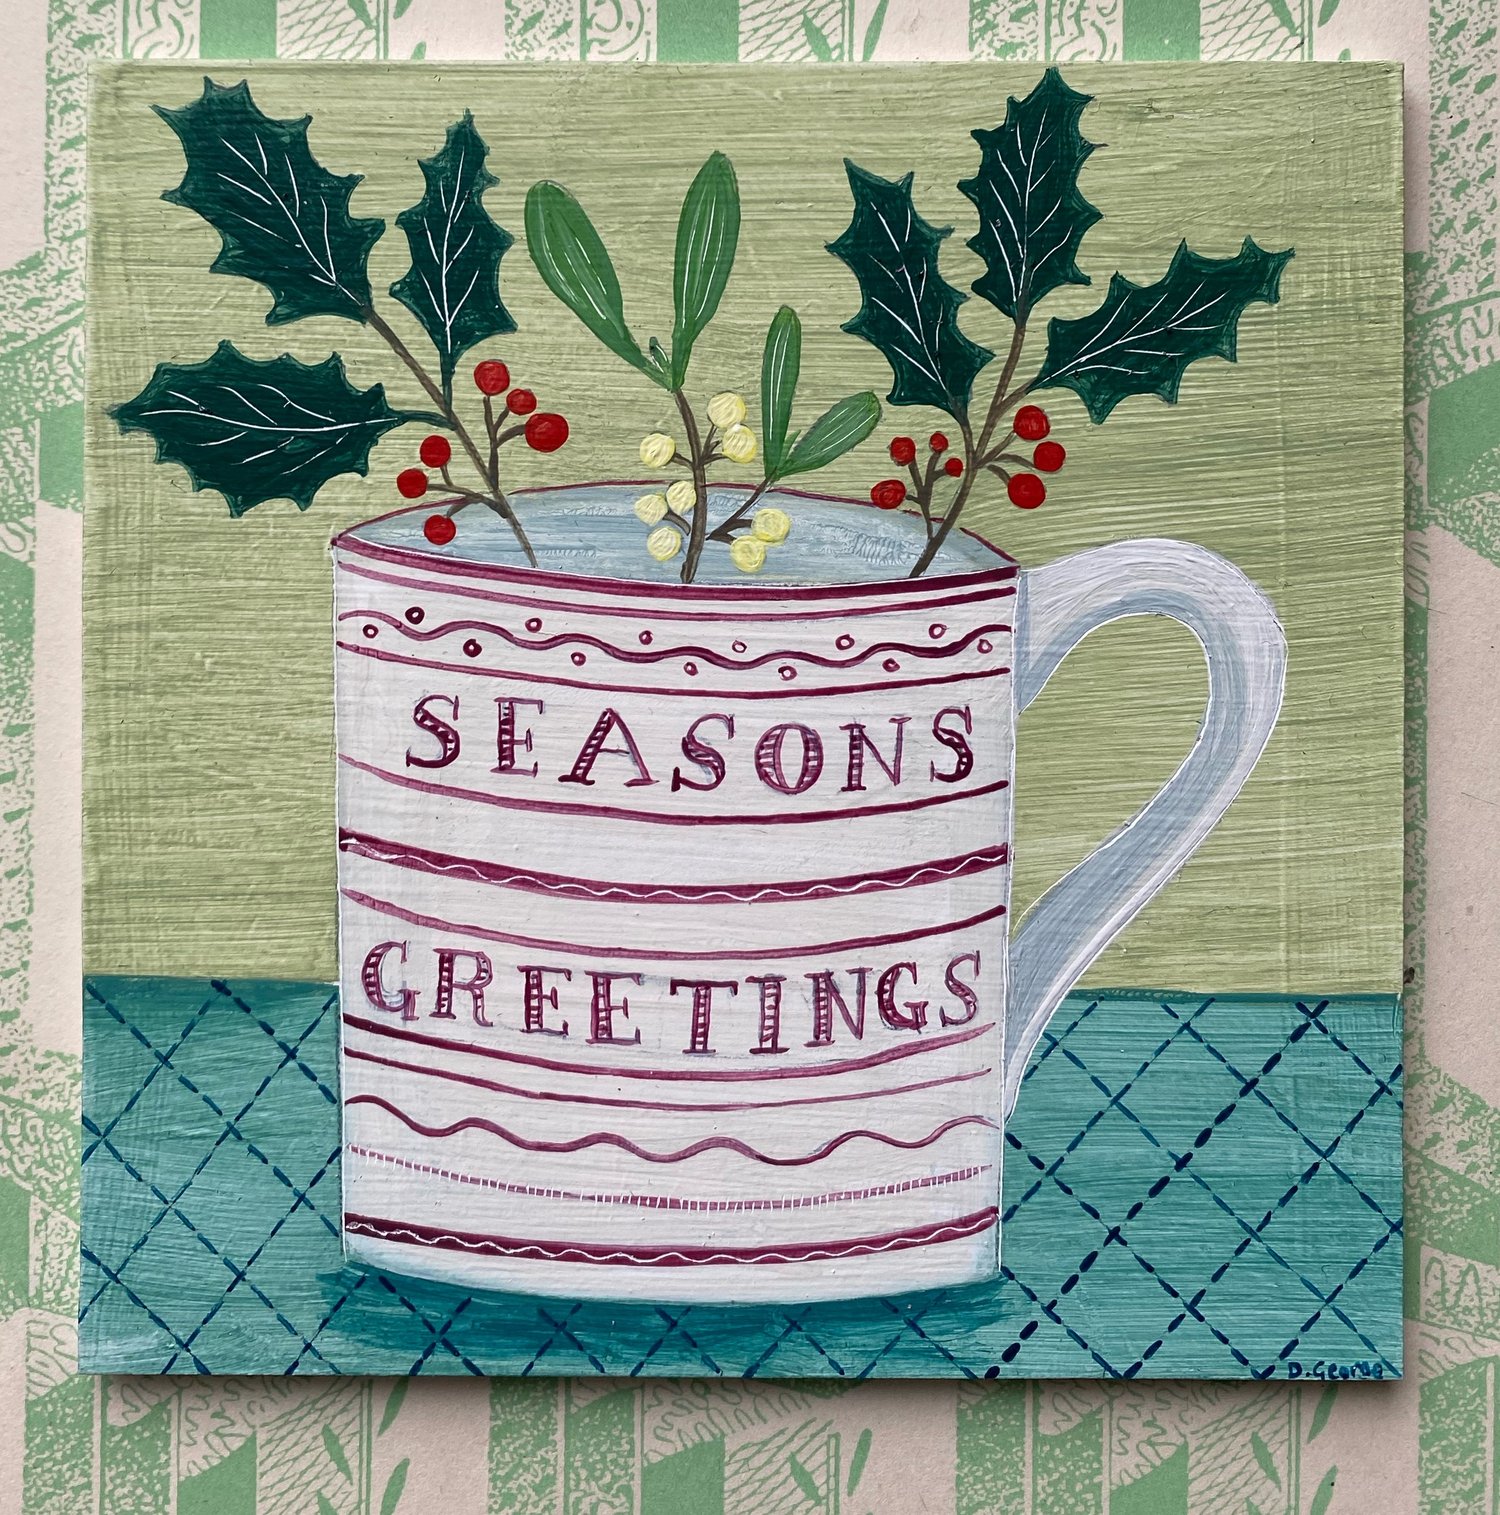 Image of Seasons Greetings cup